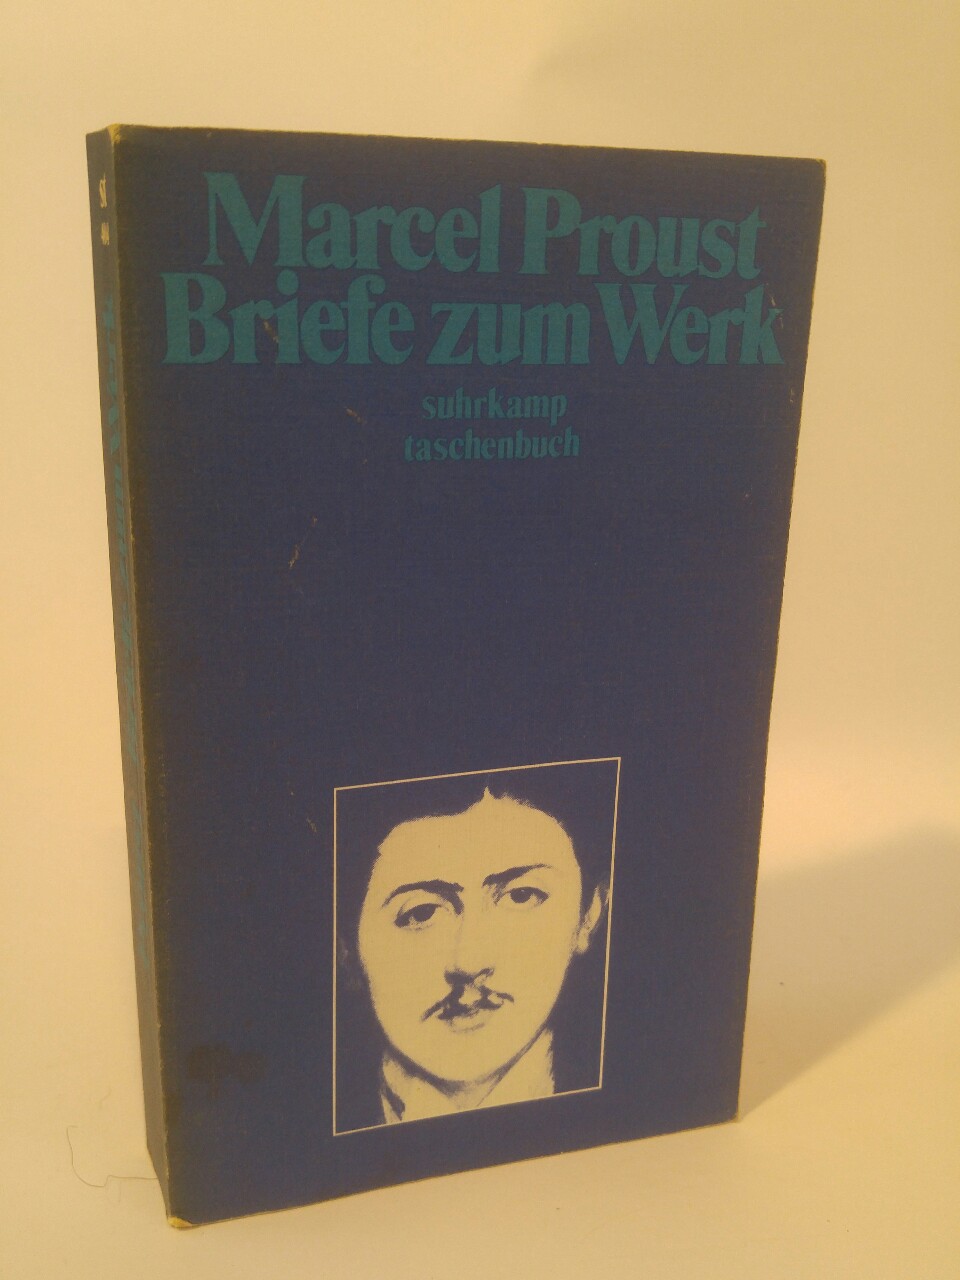 Briefe zum Werk. Mit Anhang, Nachbemerkungen, Zeittafel und Werkregister - Proust, Marcel